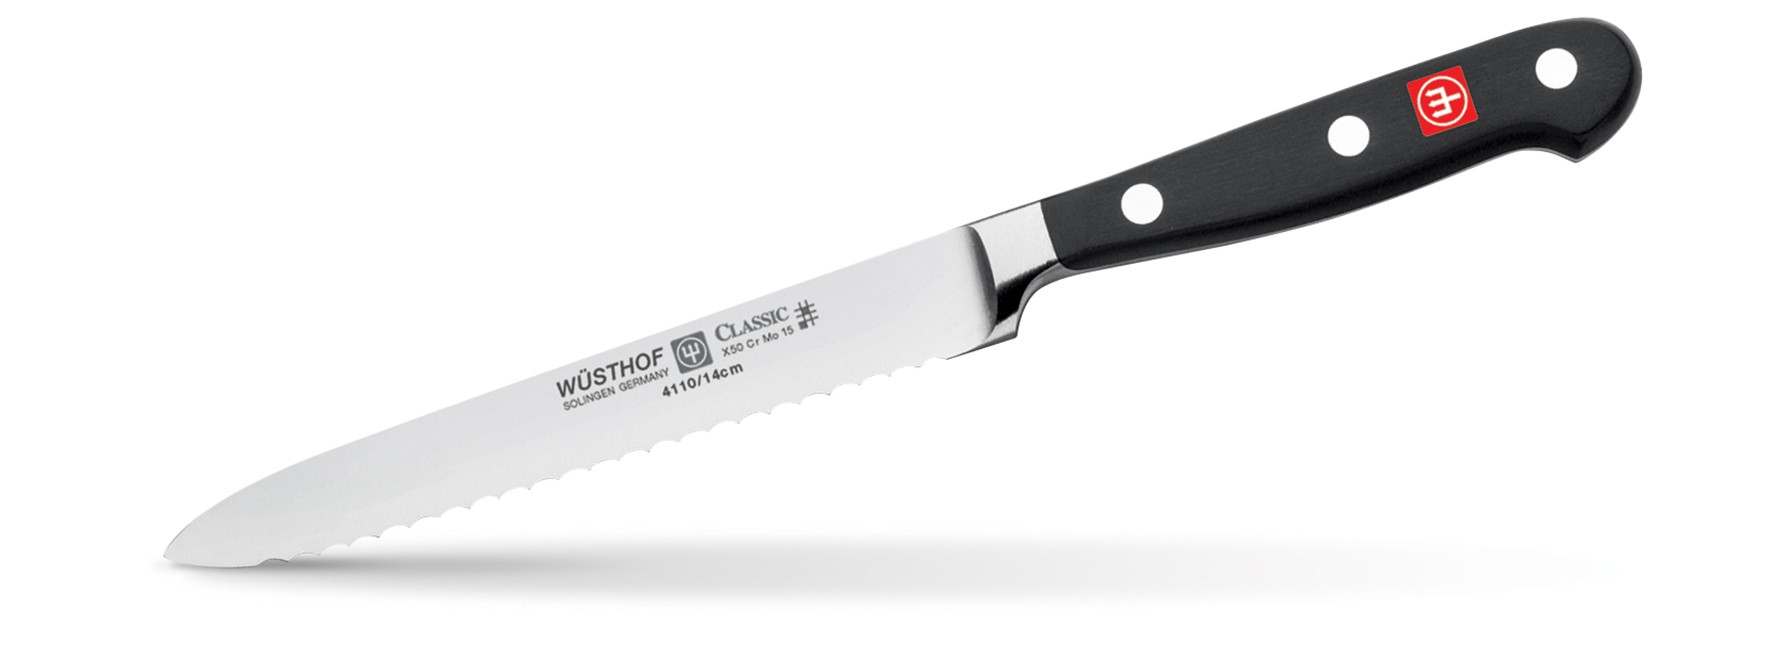 Нож кухонный для бутербродов 14 см Wusthoff - фото 1